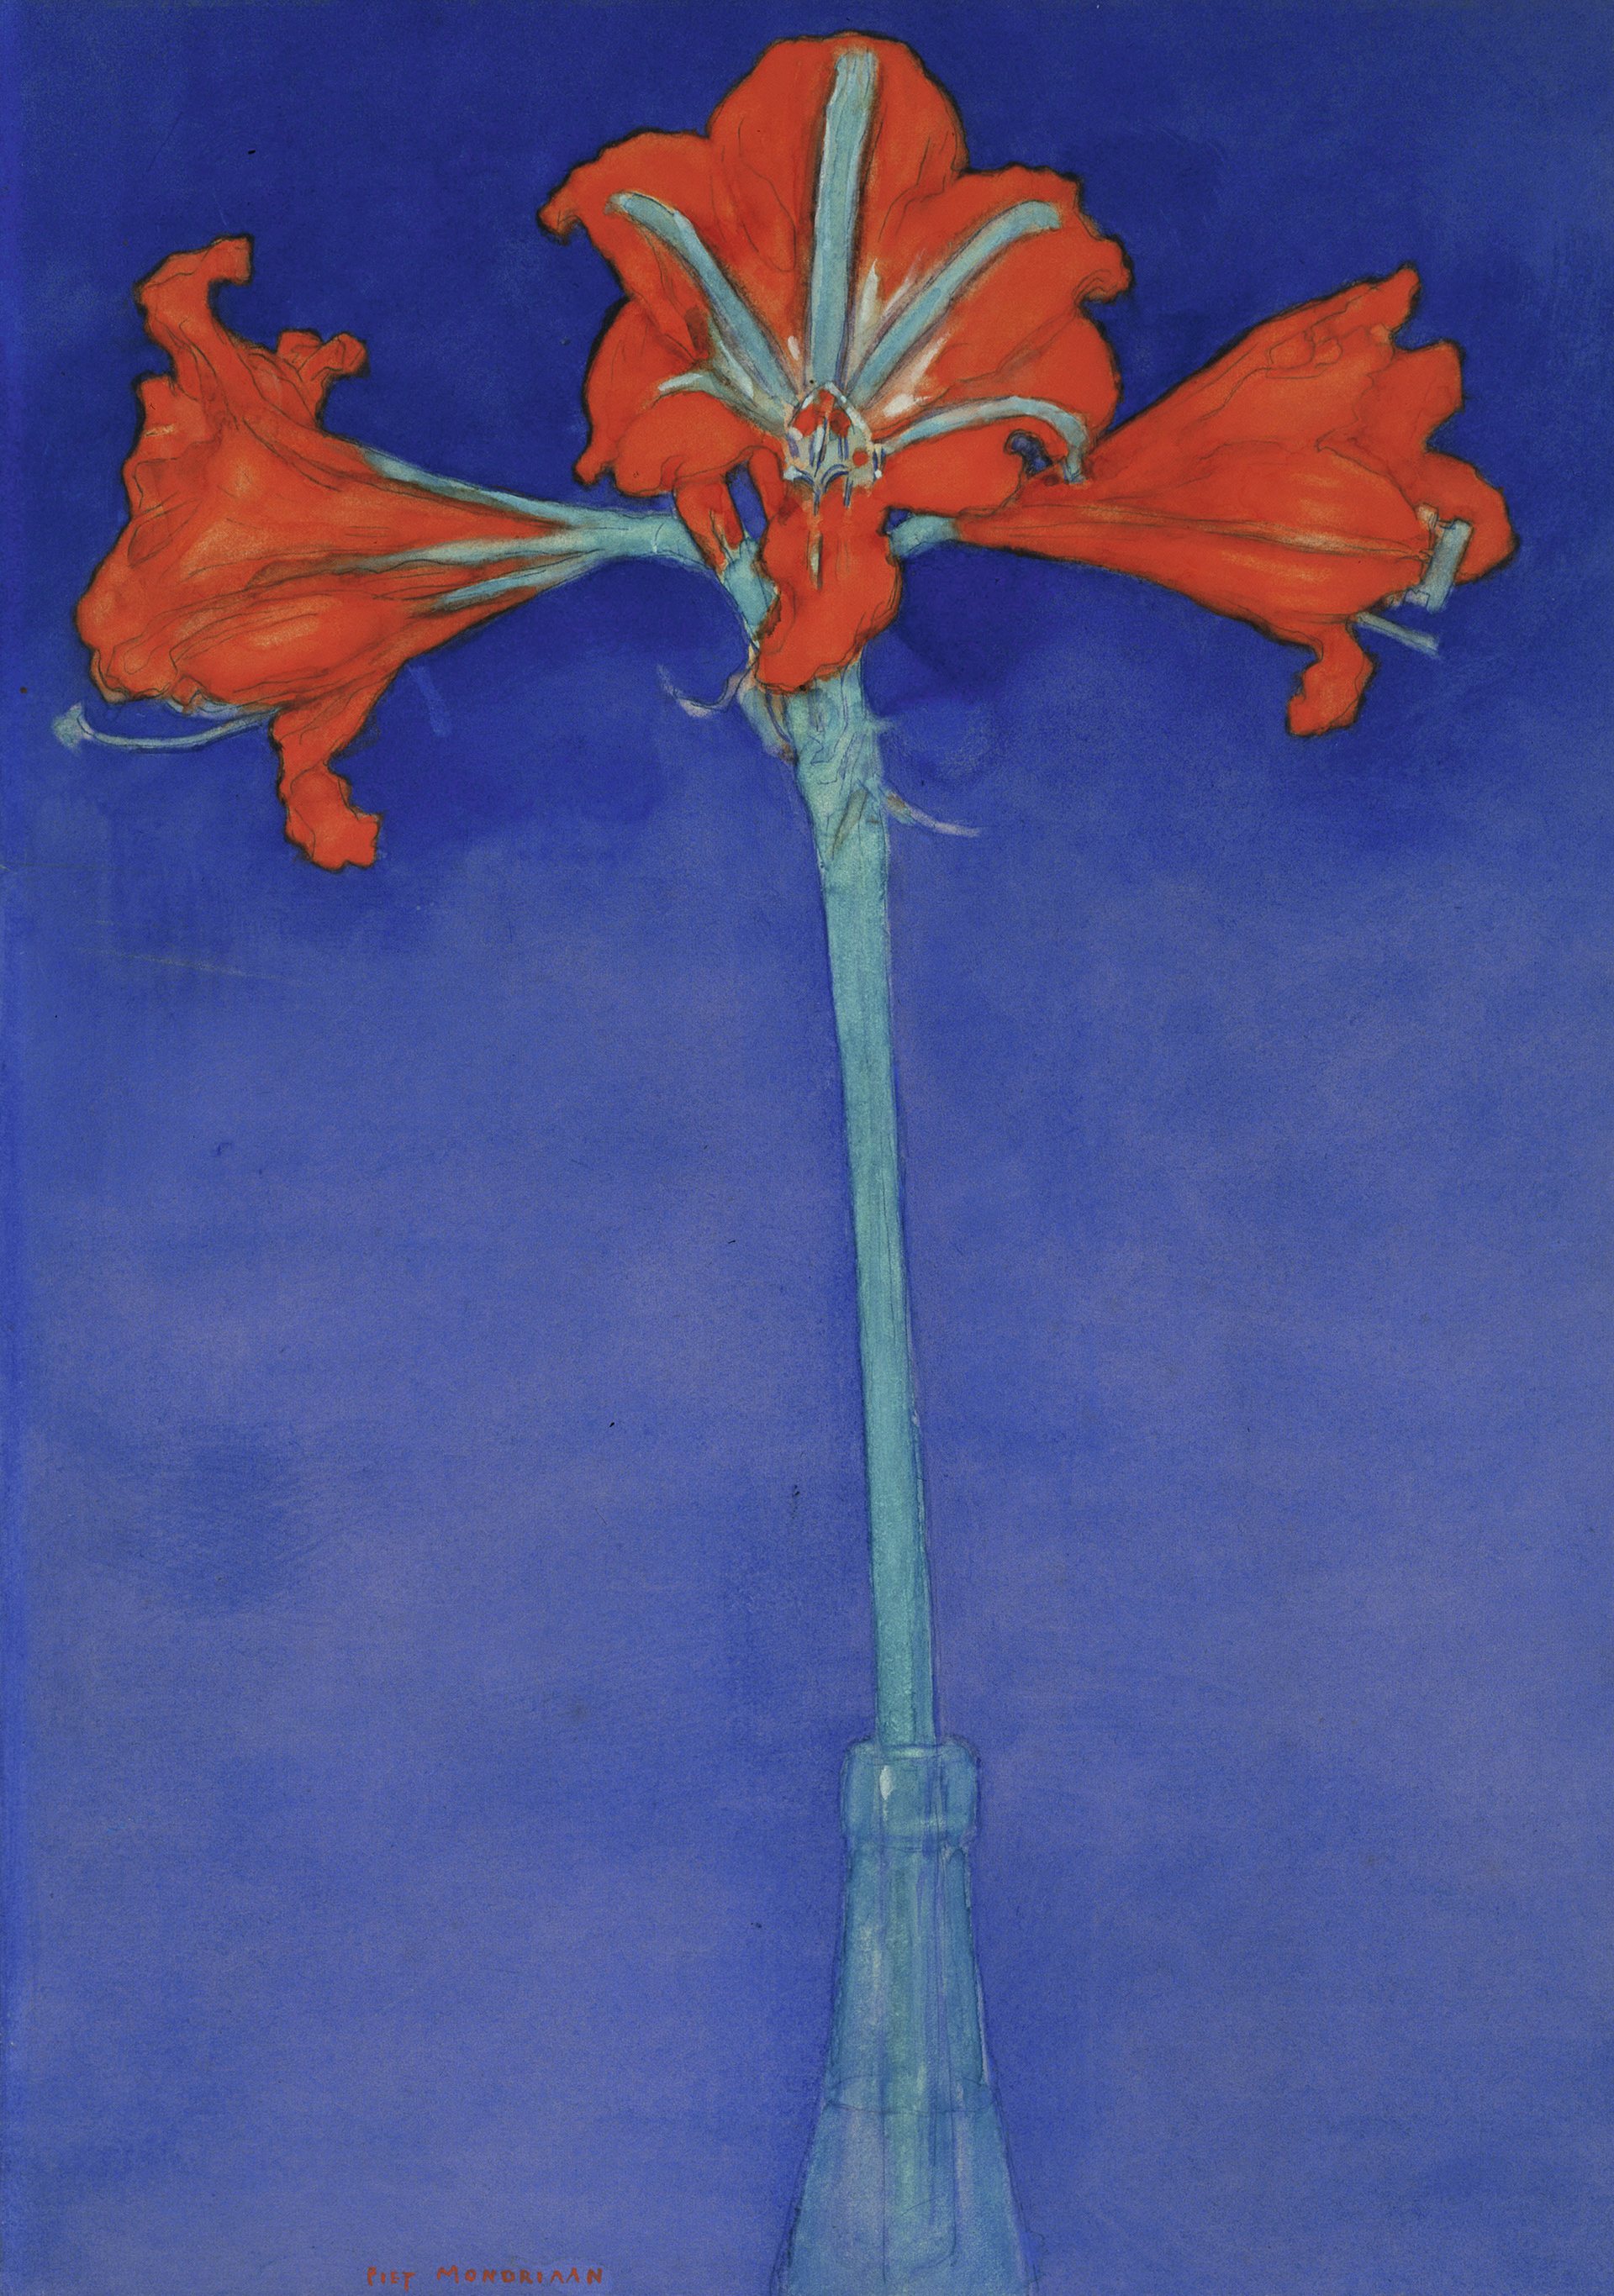 الأمارلس الأحمر مع خلفية زرقاء by Piet Mondrian - 1907 - 46.5 x 33.0 سم 